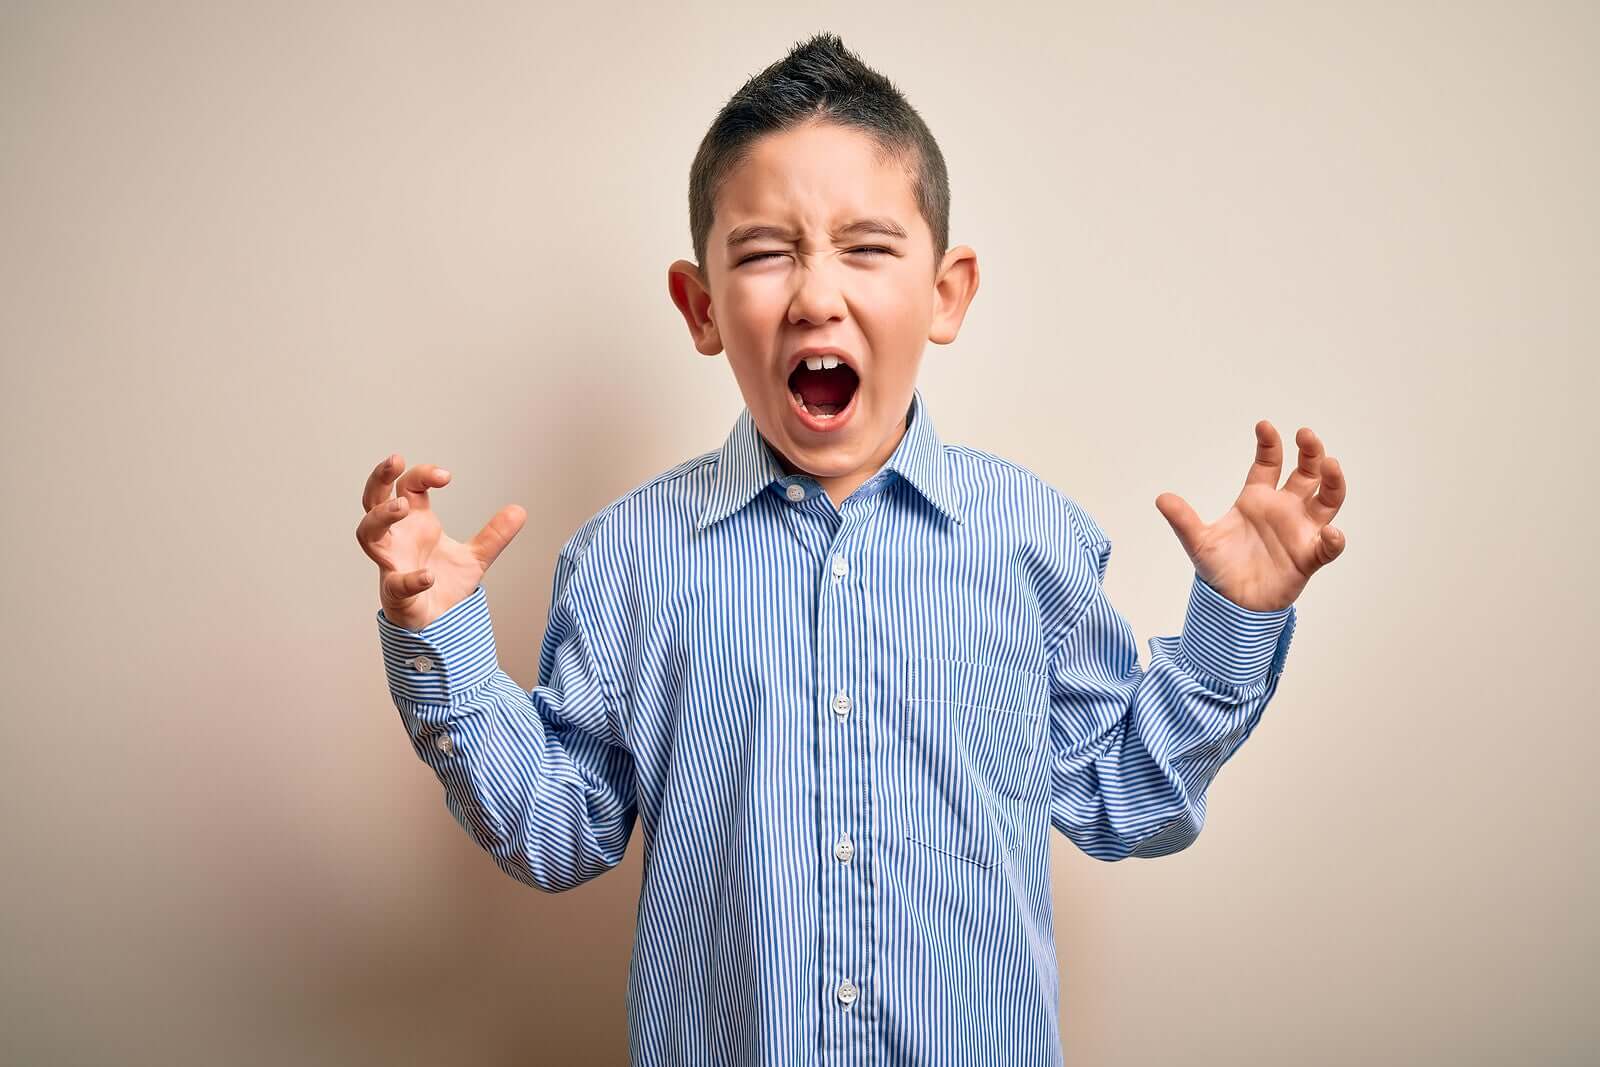 estratégias úteis para controlar a raiva em crianças